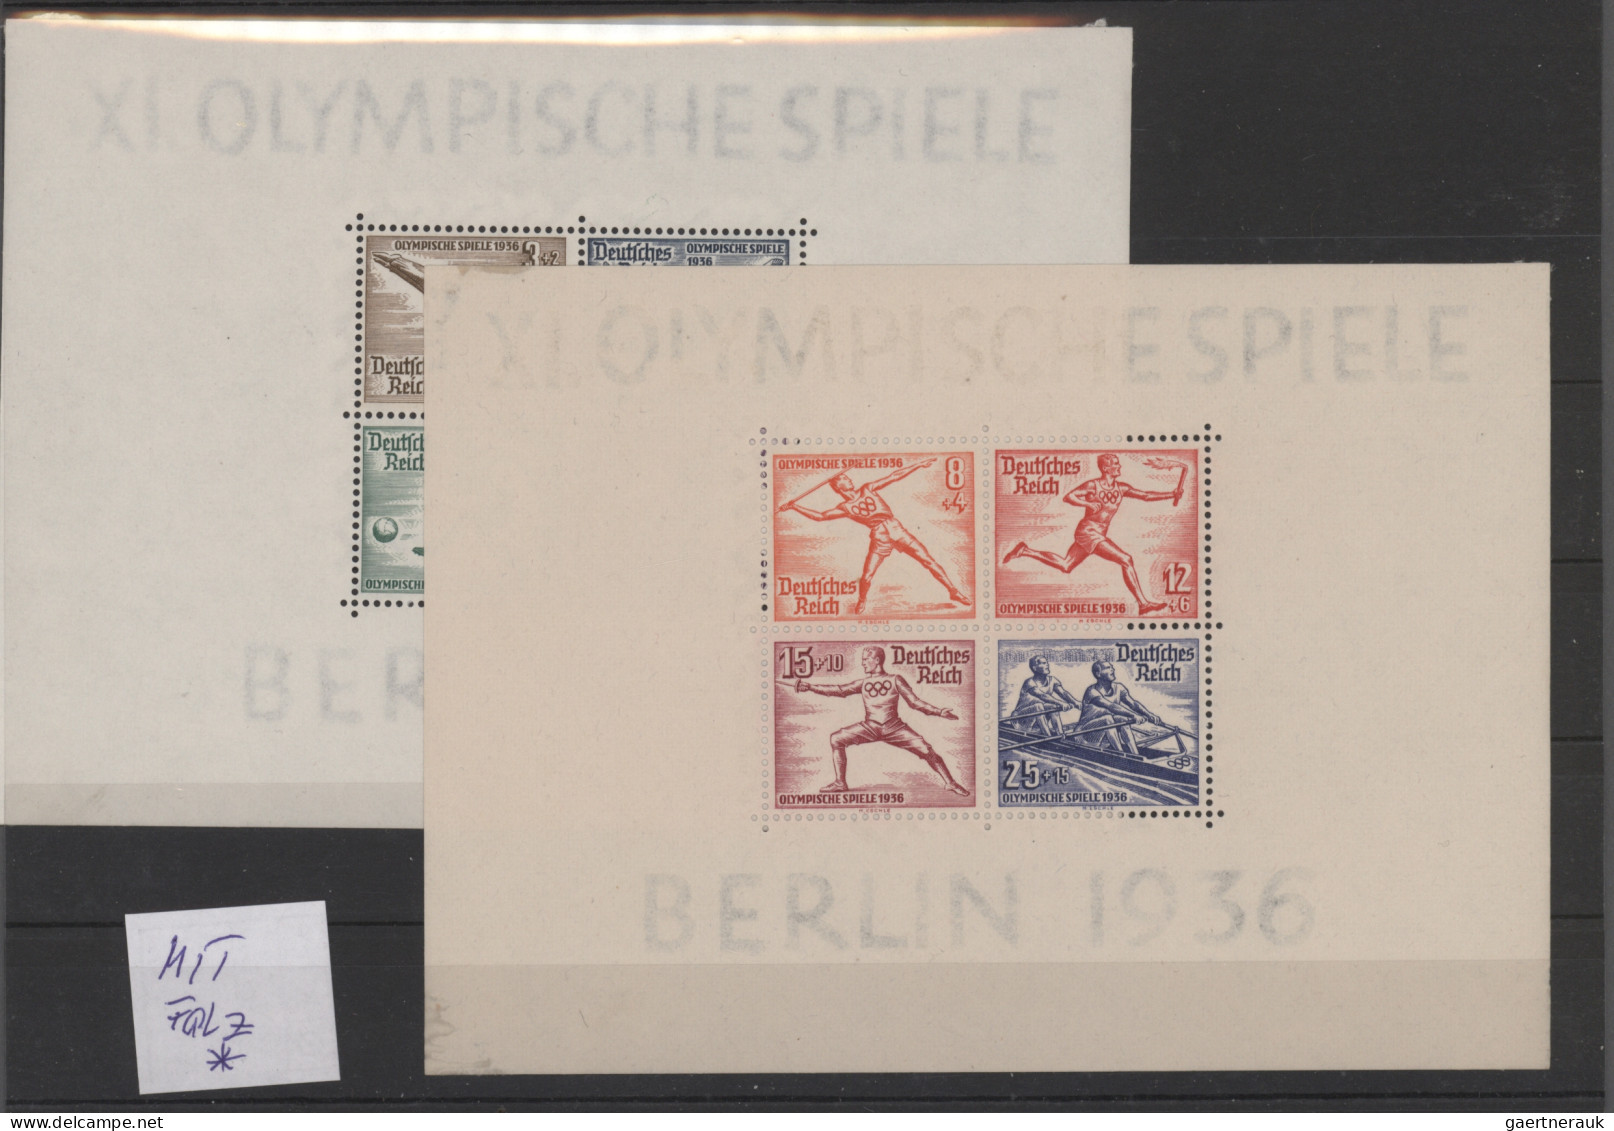 Deutsches Reich: 1872/1940, gestempelte und ungebrauchte Partie auf Steckkarten,